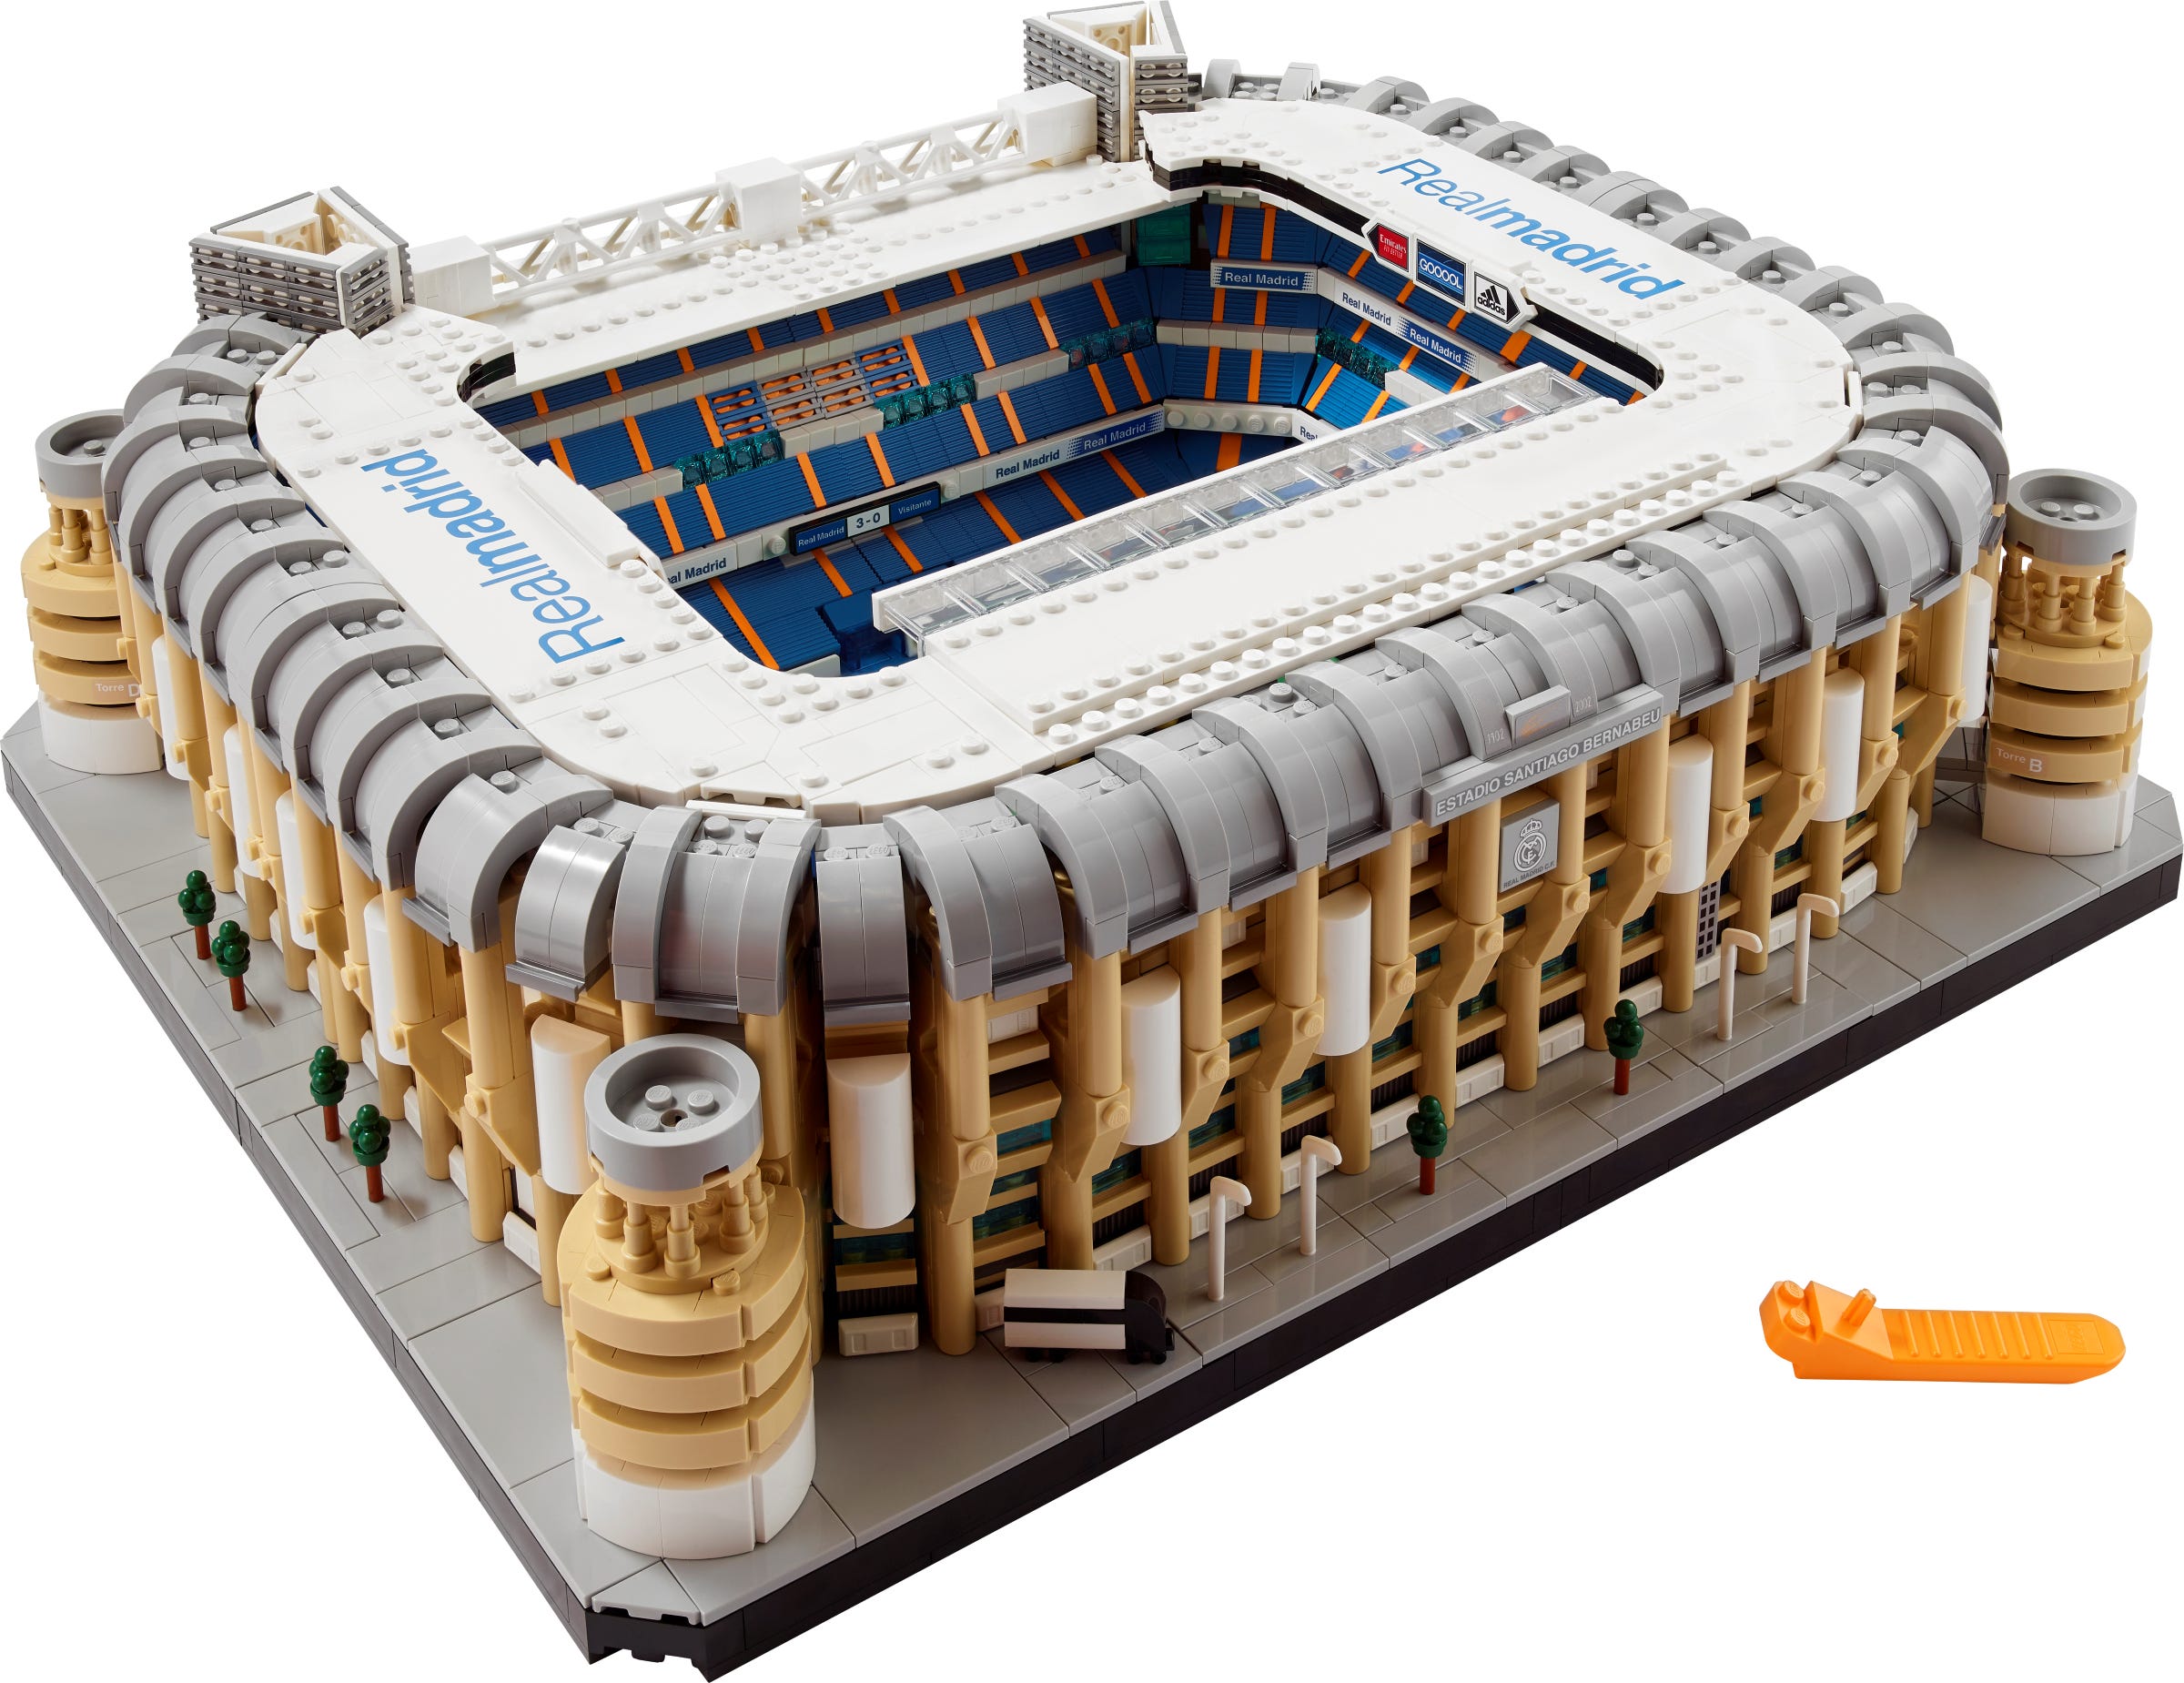 LEGO Real Madrid Stadium